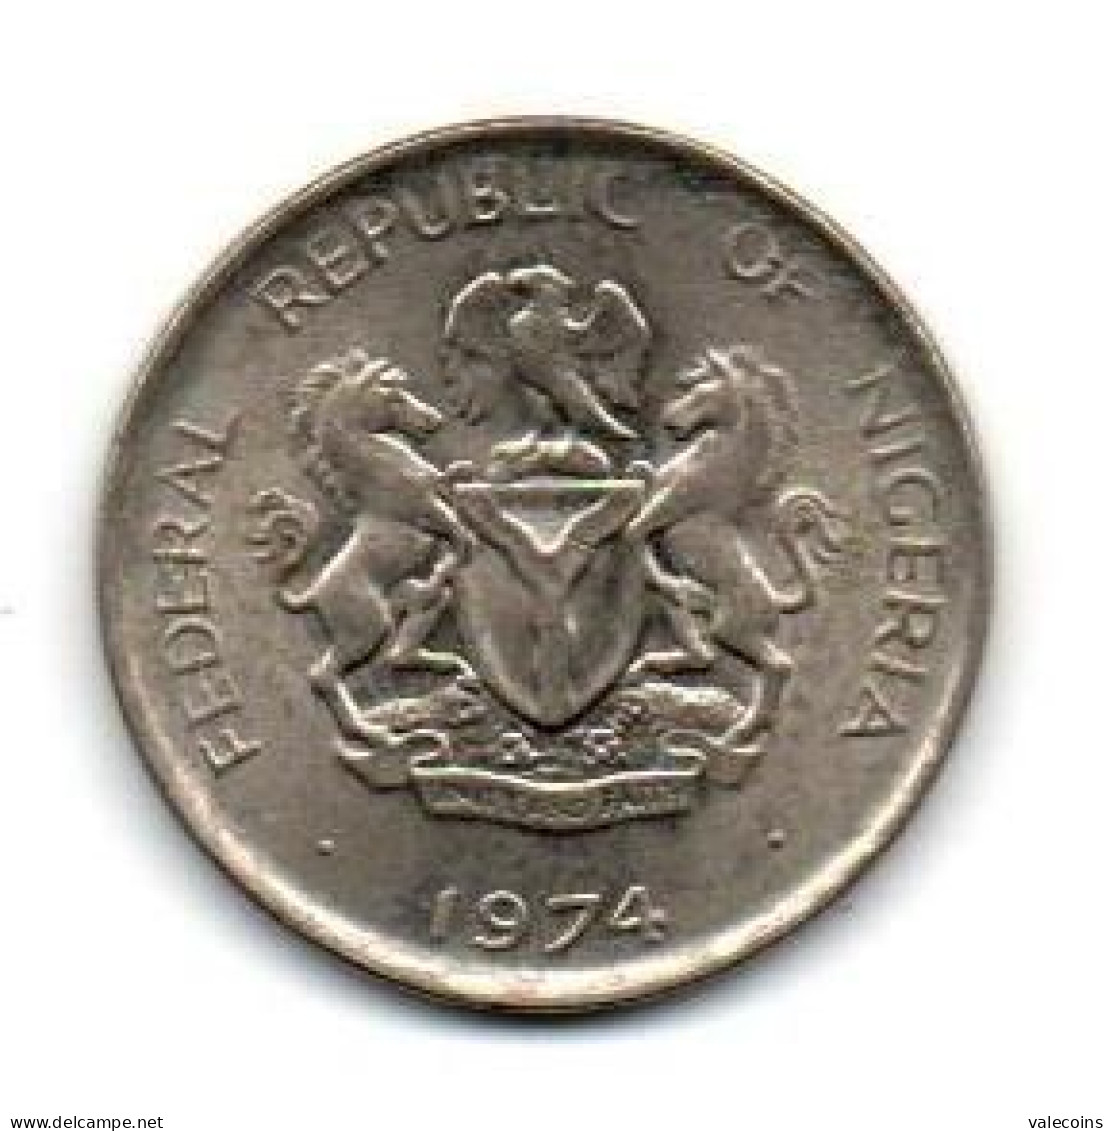 NIGERIA - 5 Kobo KM# 9.1 - 1974 - Coin XF - Nigeria